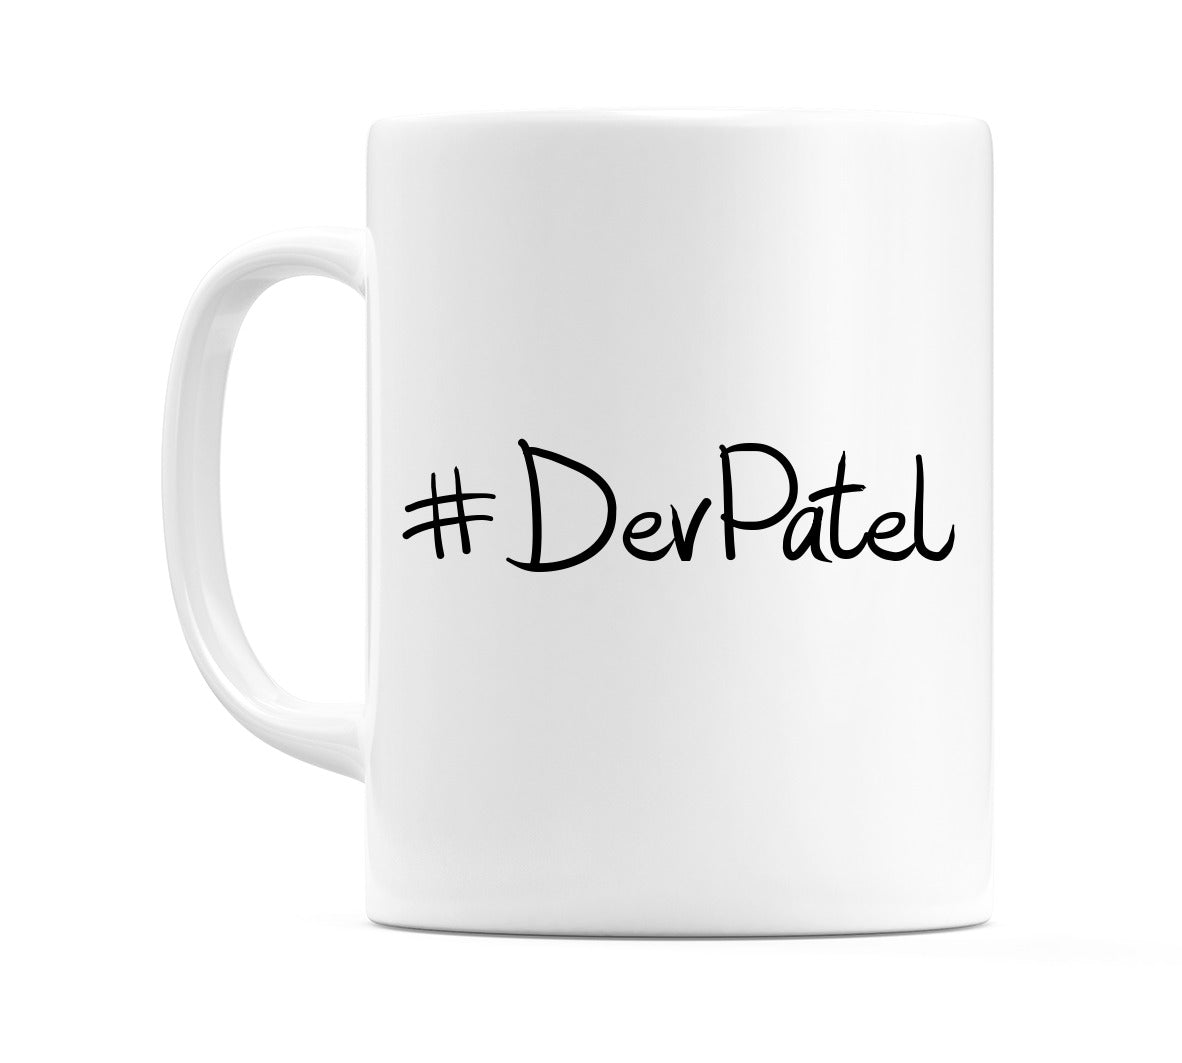 #DevPatel Mug